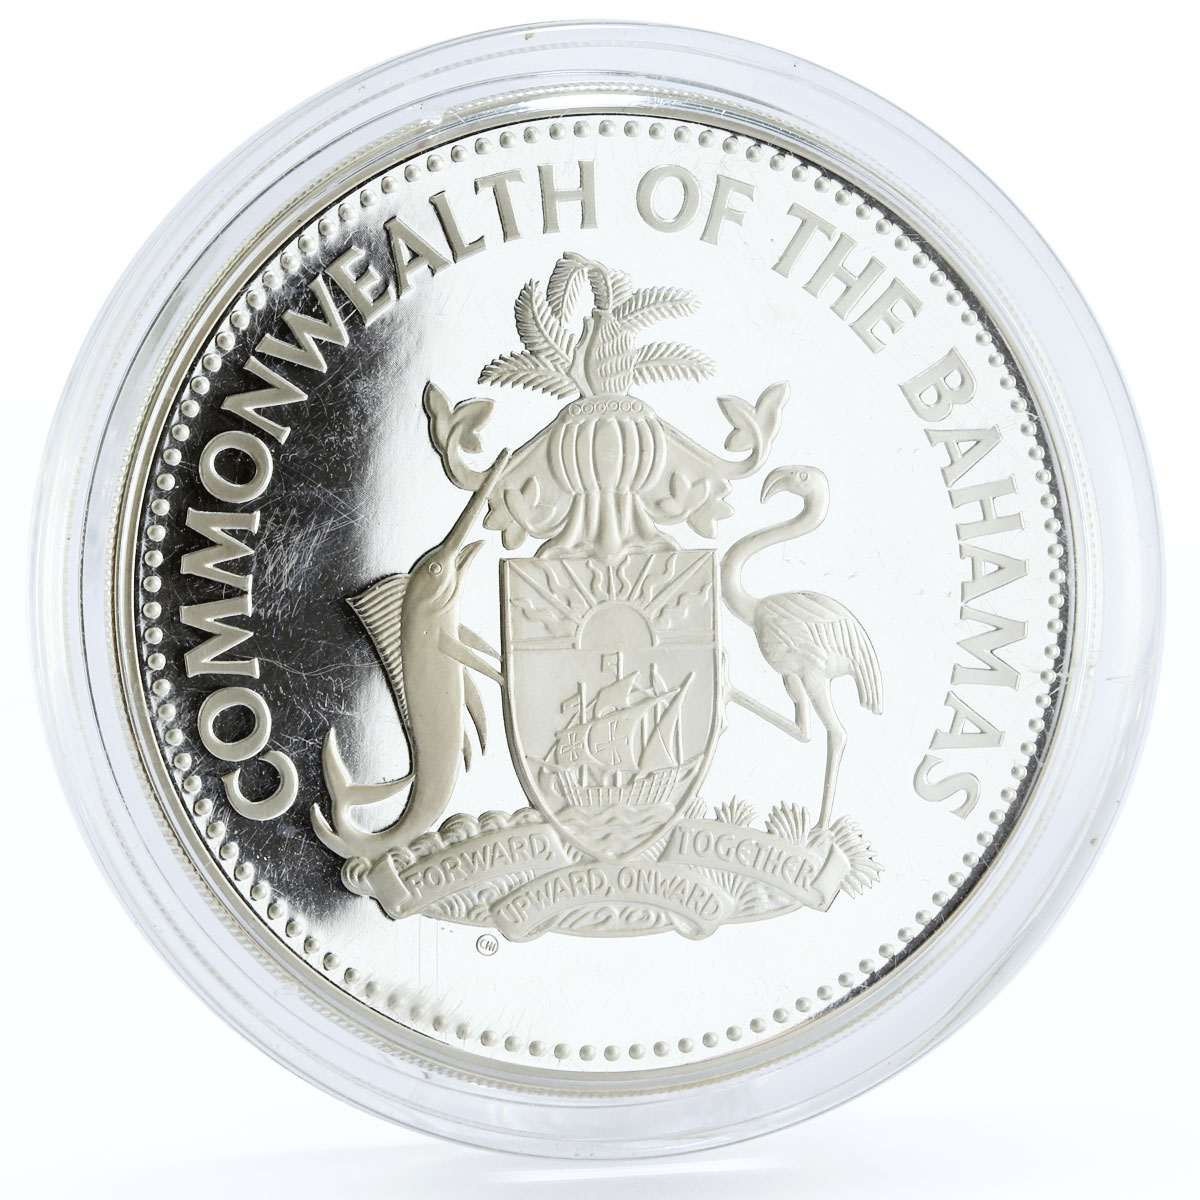 Bahamas 25 dollars Christopher Columbus San Salvador proof silver coin 1985